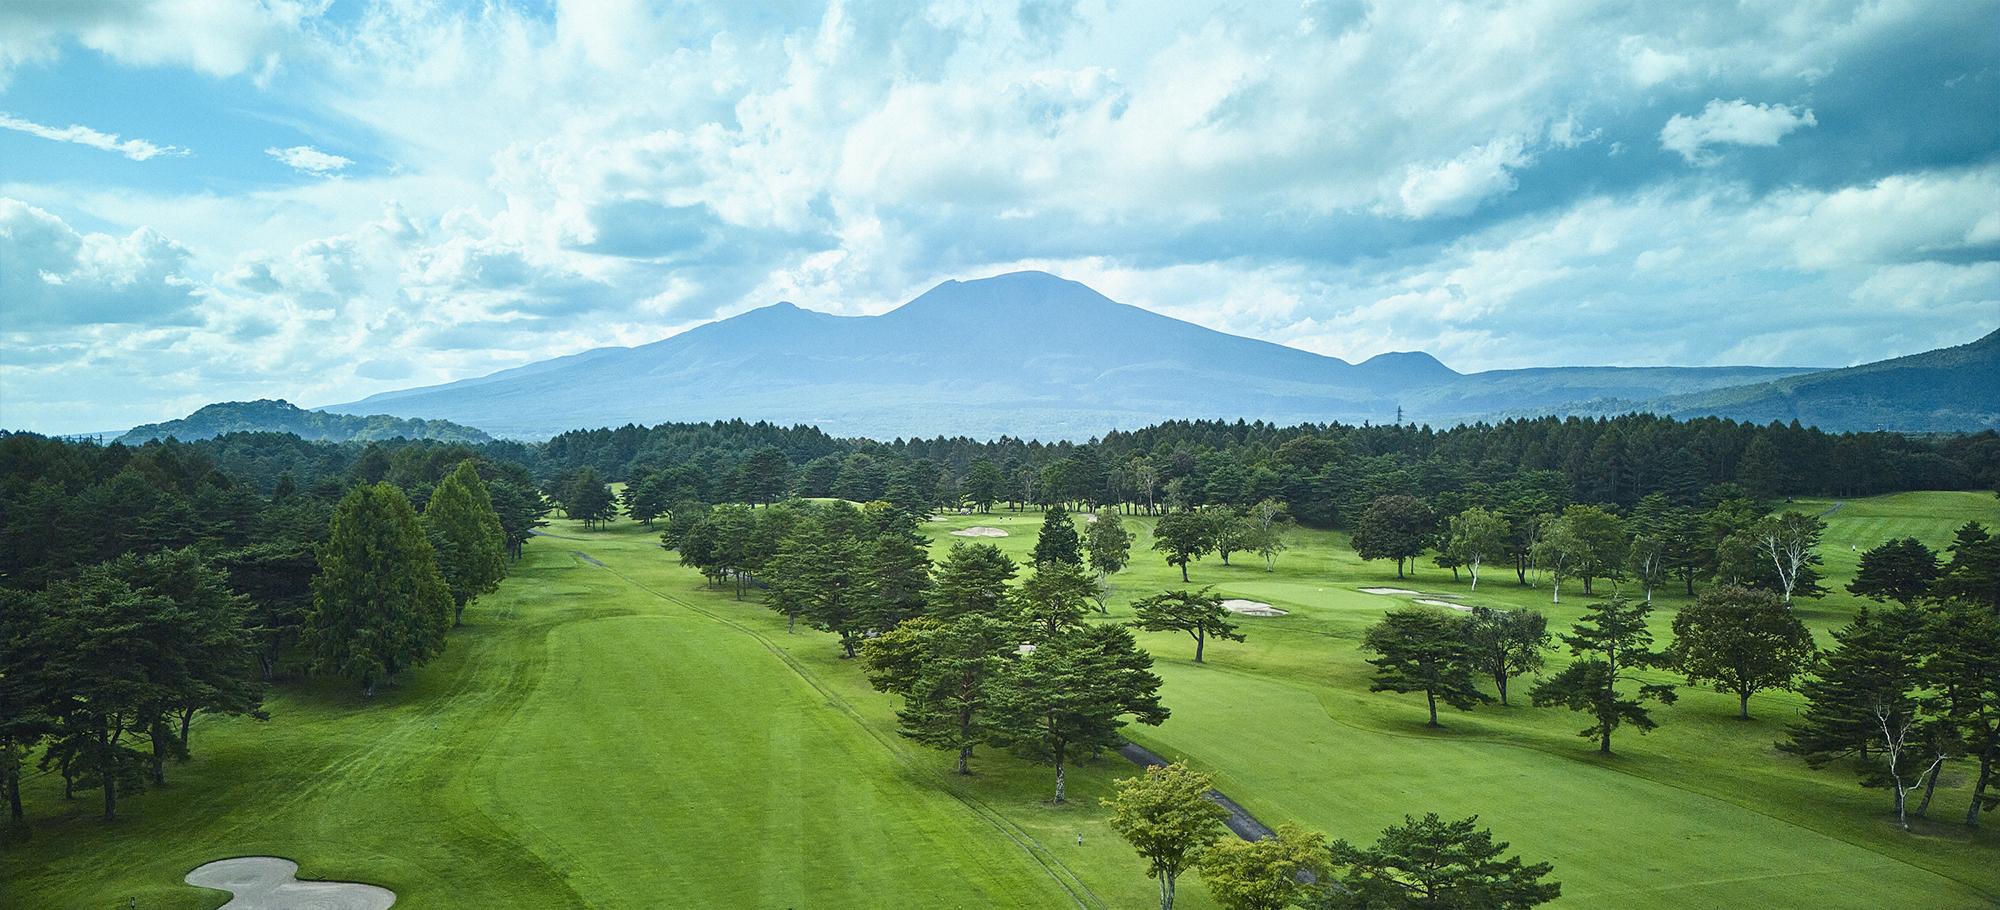 公式サイト | 軽井沢72ゴルフ 北コース